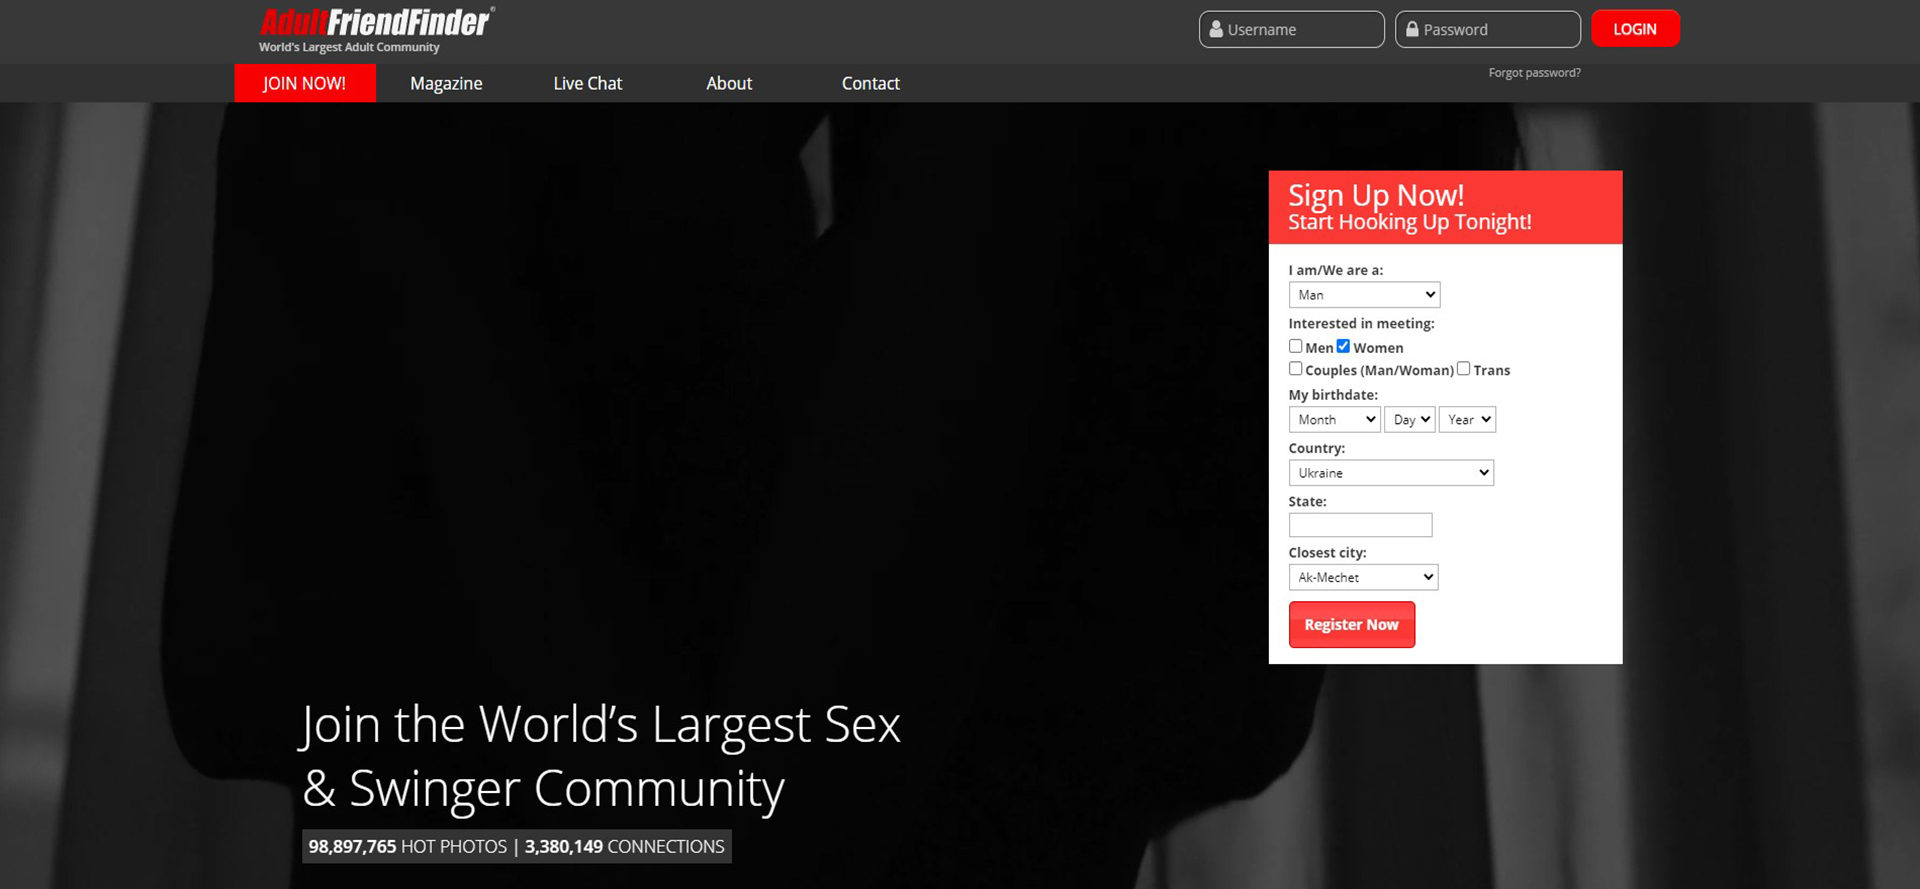 AdultFriendFinder Site Screenshot.